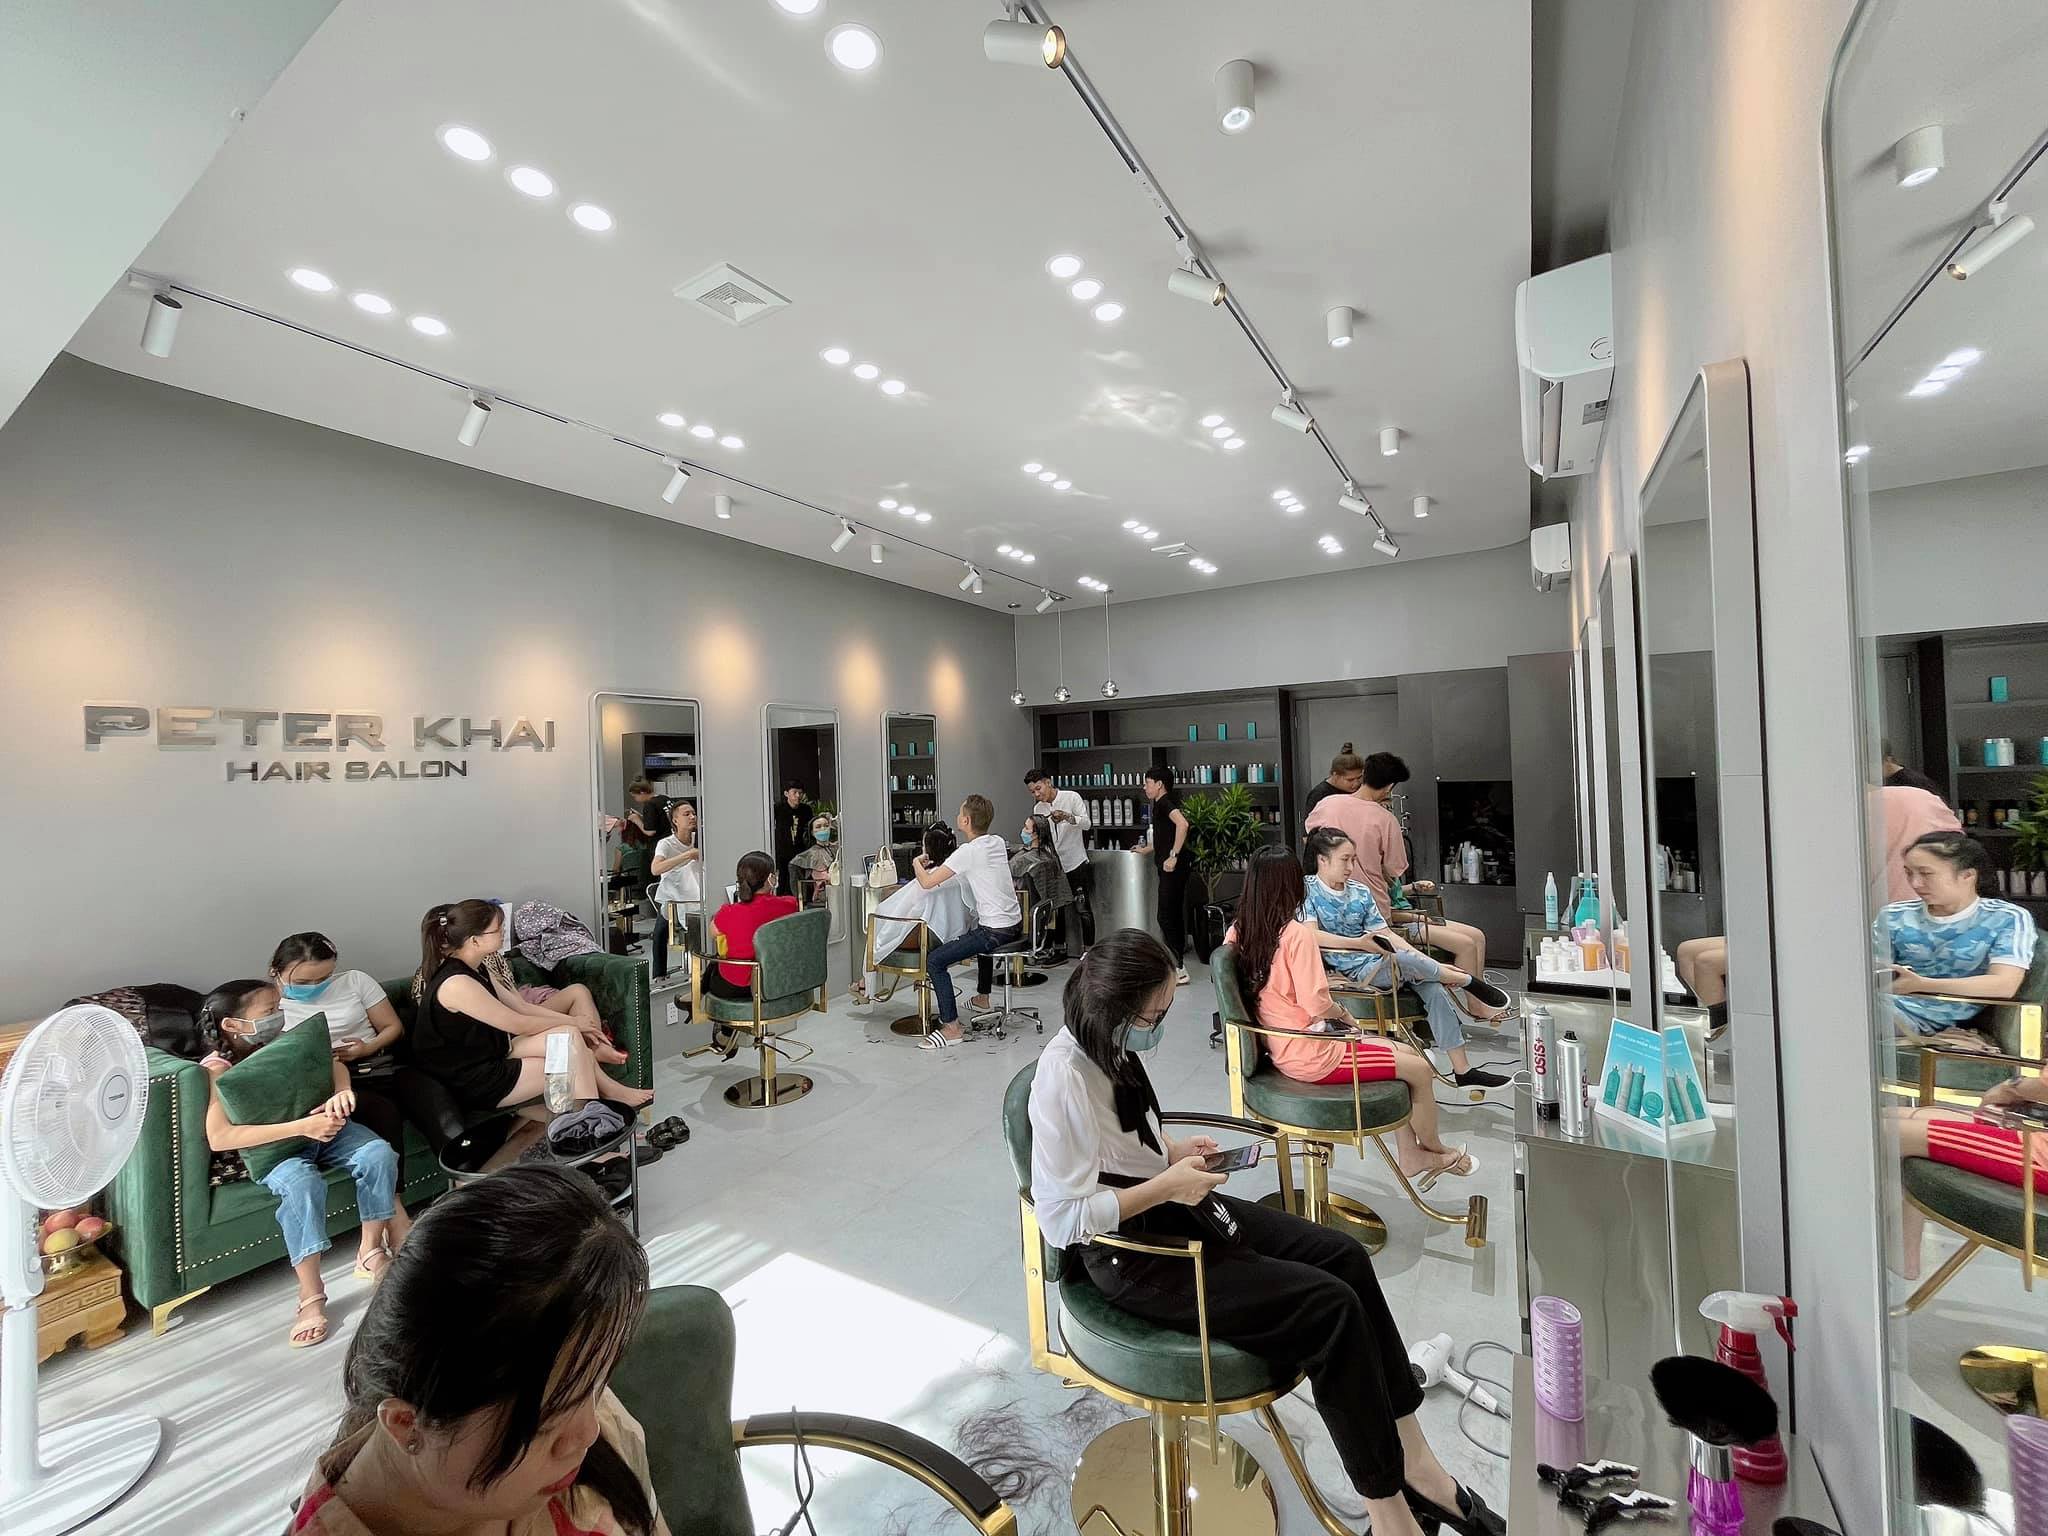 Peter Khai Hair Salon - Top Quảng Bình | Kênh Review Du lịch - Ẩm thực -  Dịch vụ